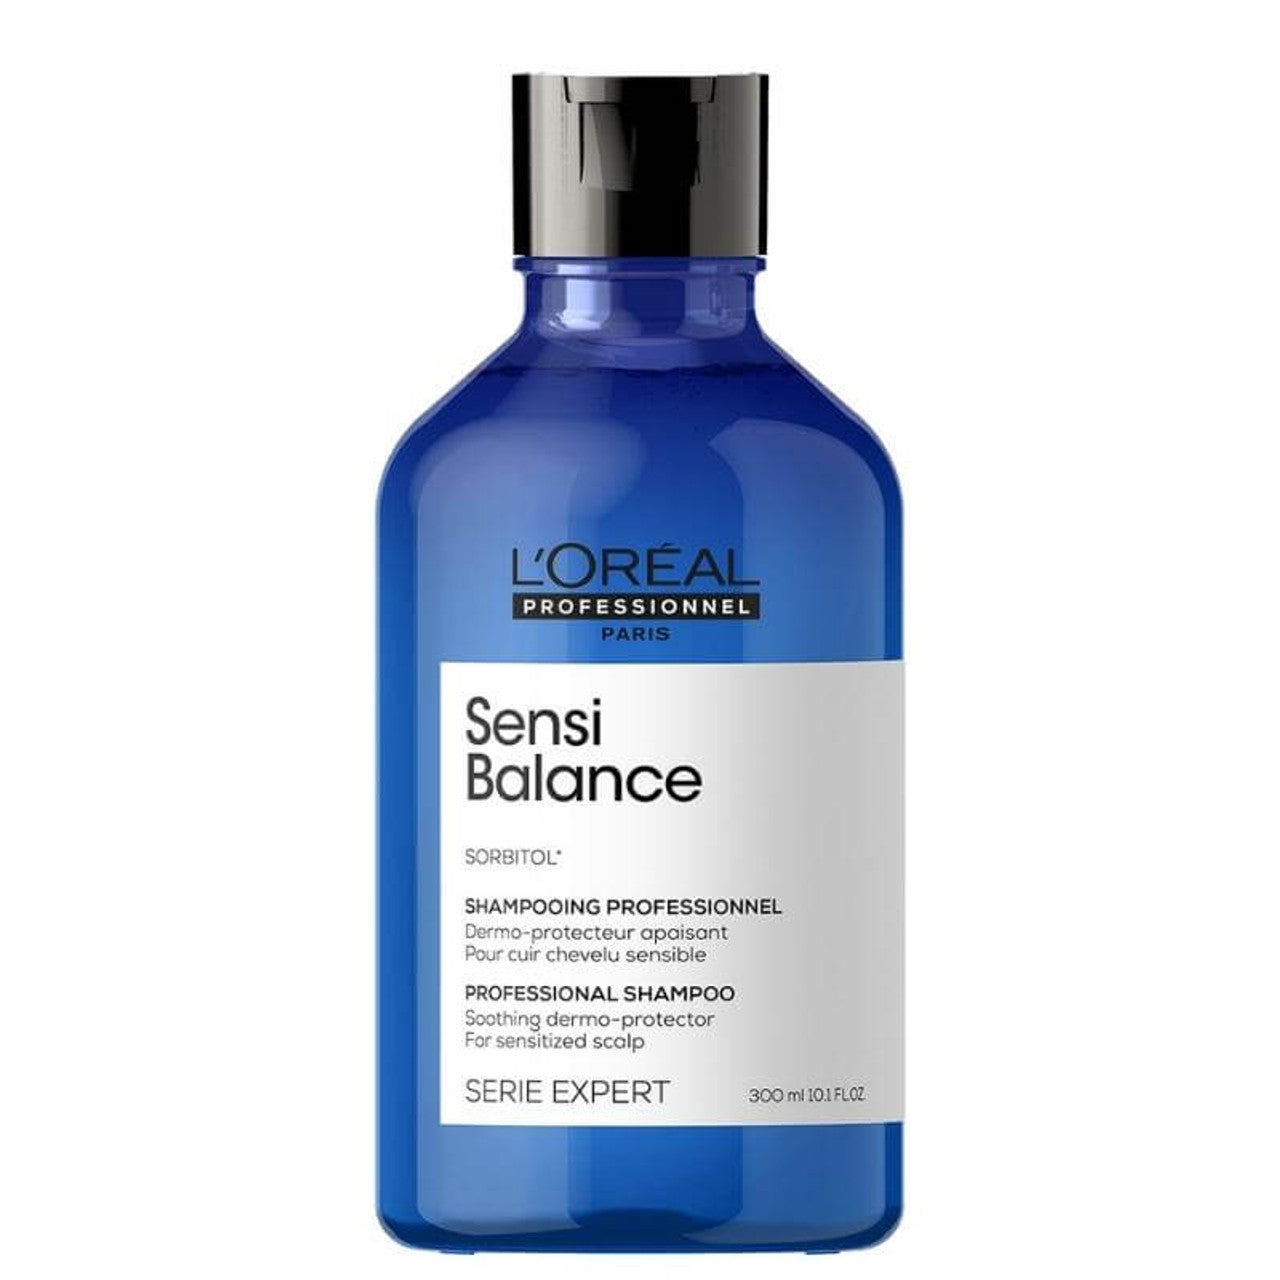 L'oréal Série Expert Sensi Balance Shampoing